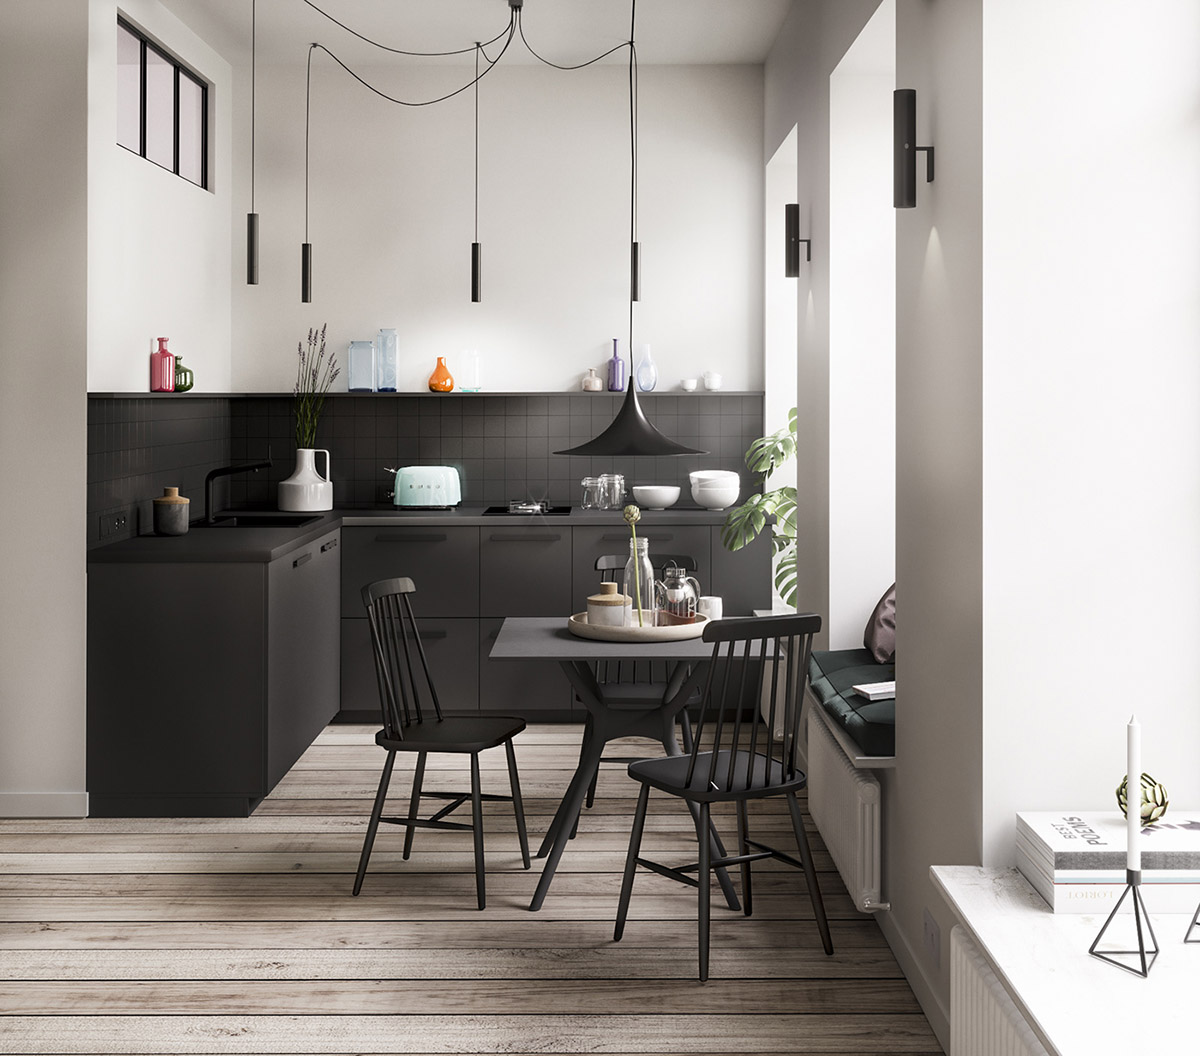 Phòng bếp lựa chọn sơn tường màu trắng tươi sáng kết hợp với nội thất màu đen chủ đạo cho cái nhìn tương phản nhưng đẹp mắt và tạo chiều sâu cho khu vực nấu nướng. Bên cạnh đó, hệ thống đèn thả cũng là một trong những điểm nhấn duyên dáng và ấn tượng cho phòng bếp.